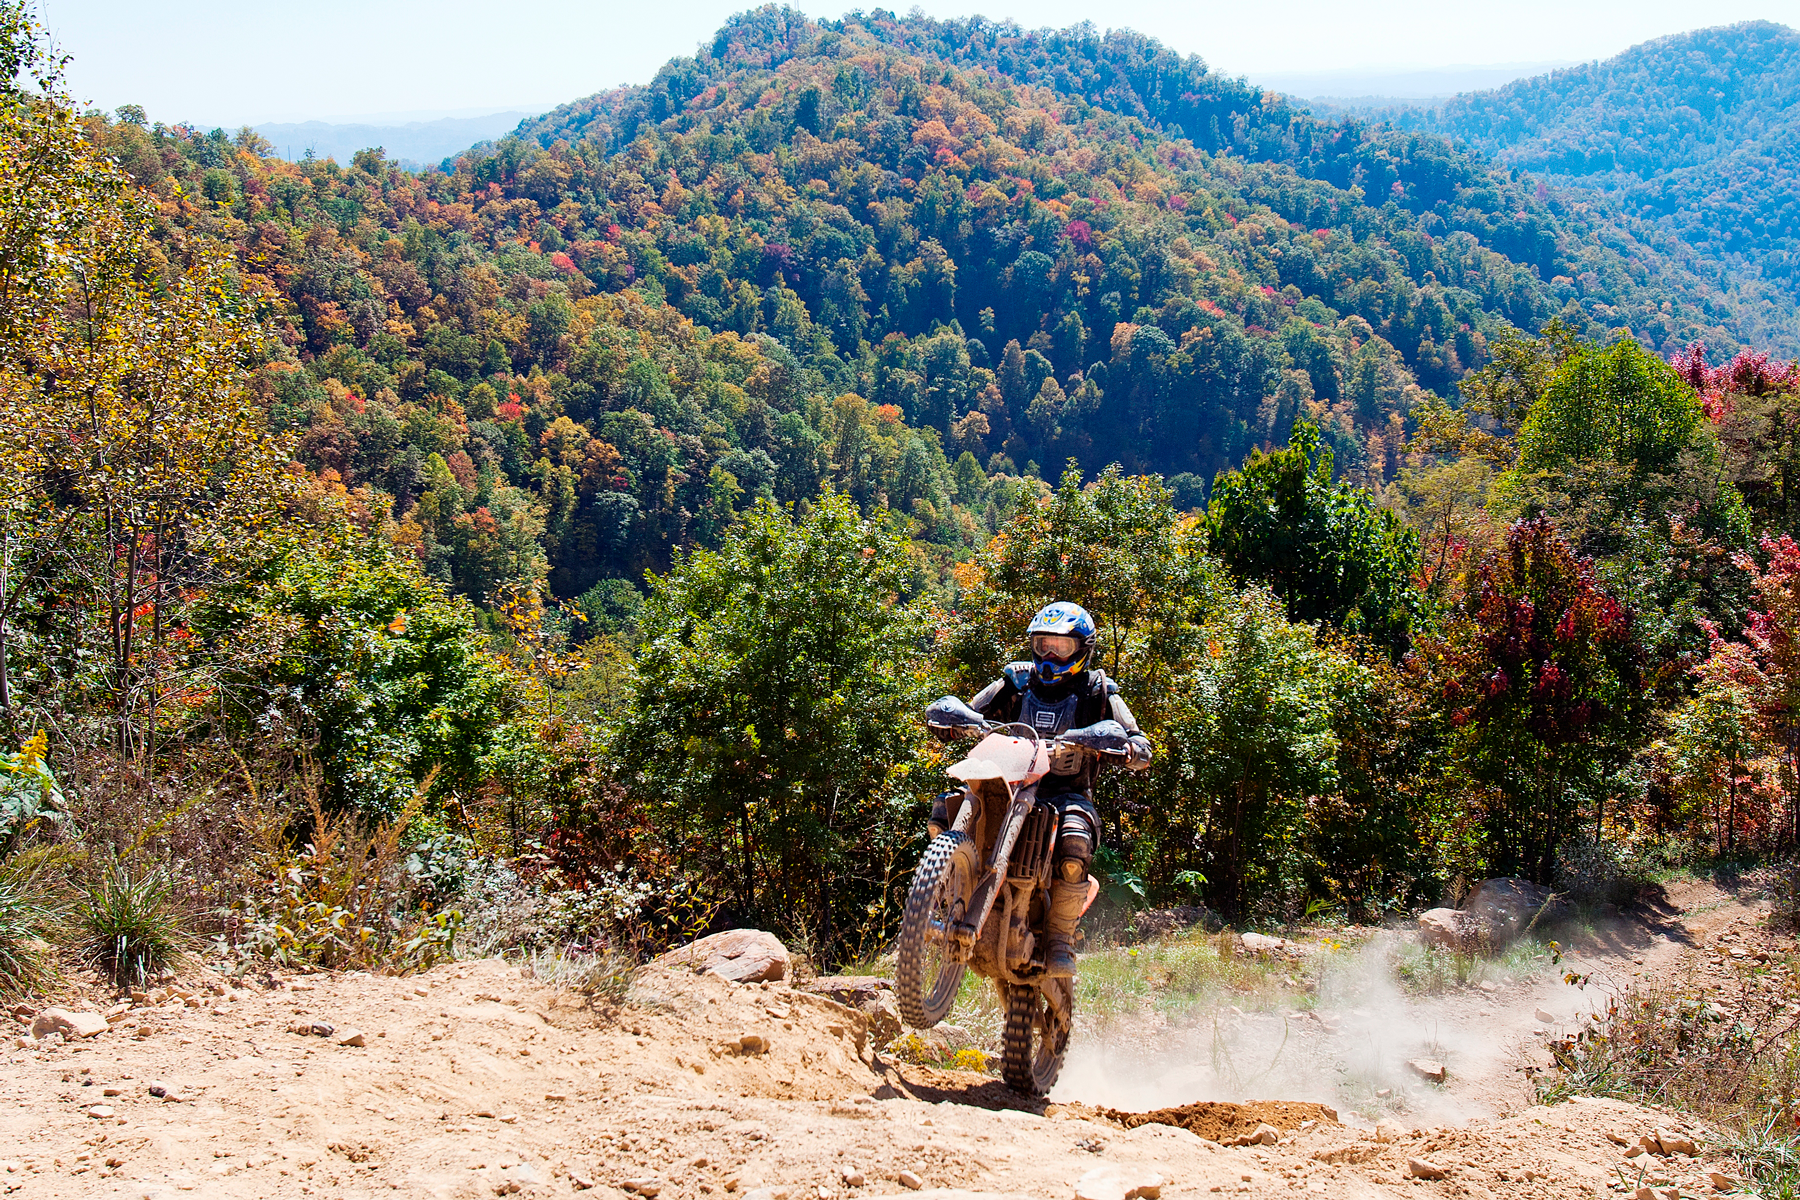 Hatfield McCoy mountain vista with a dirt biker doing a wheelie uphill.